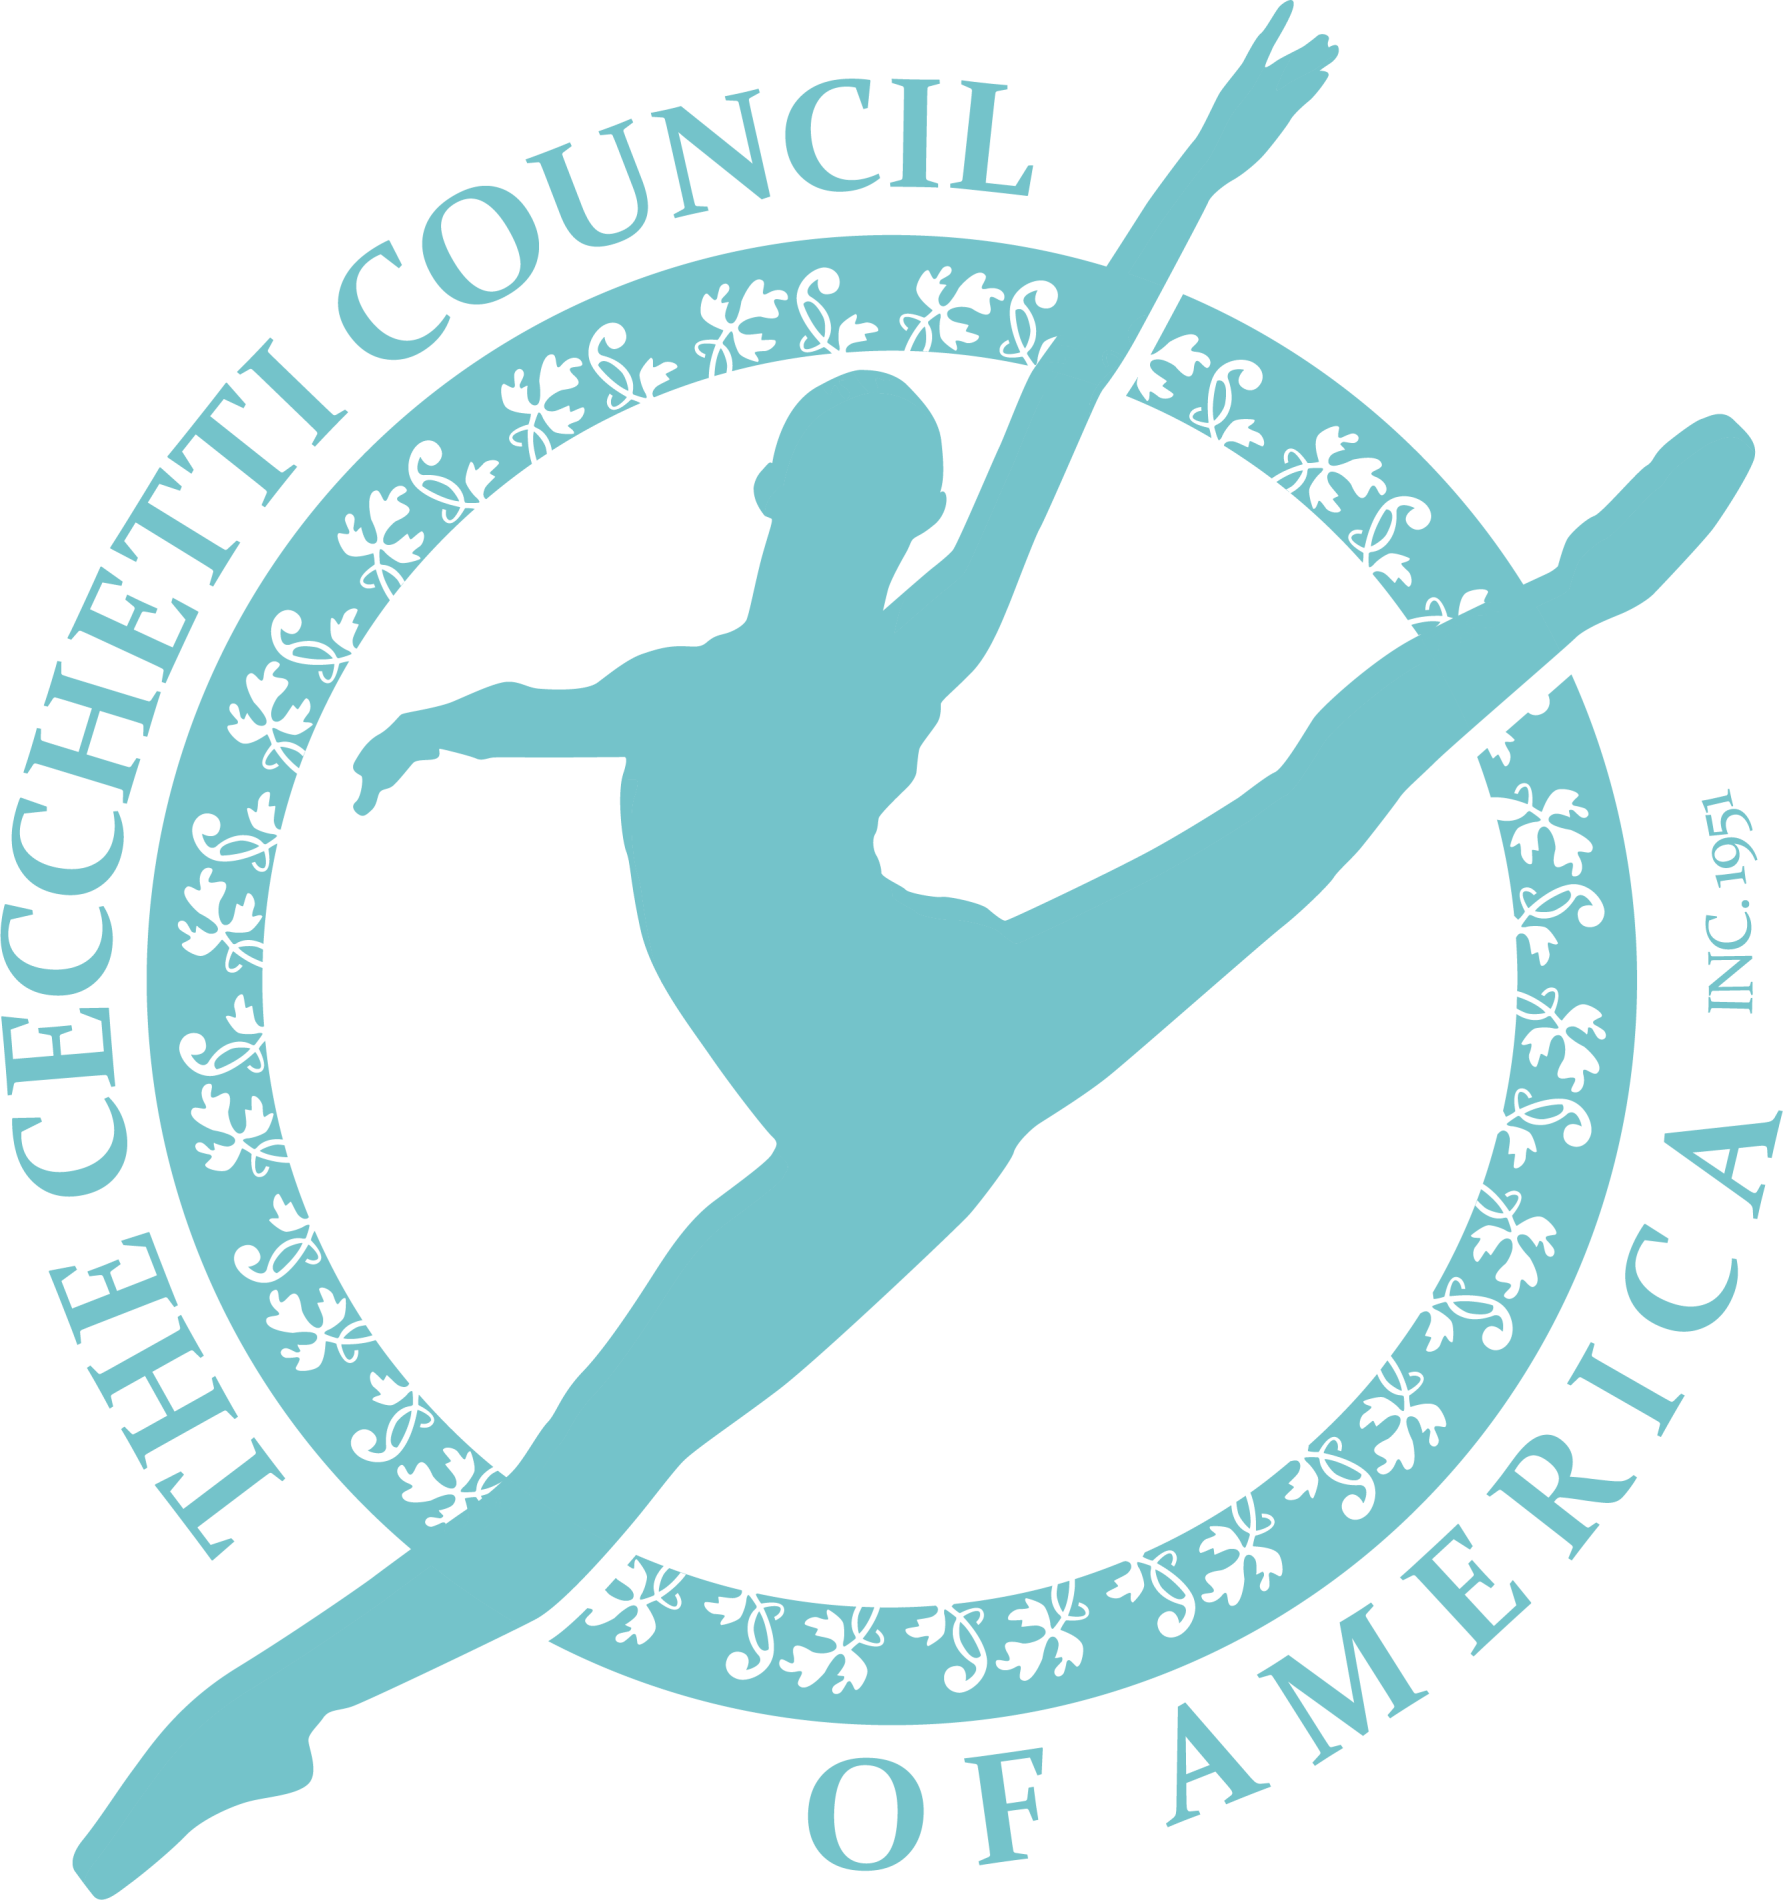 The Cecchetti Council of America